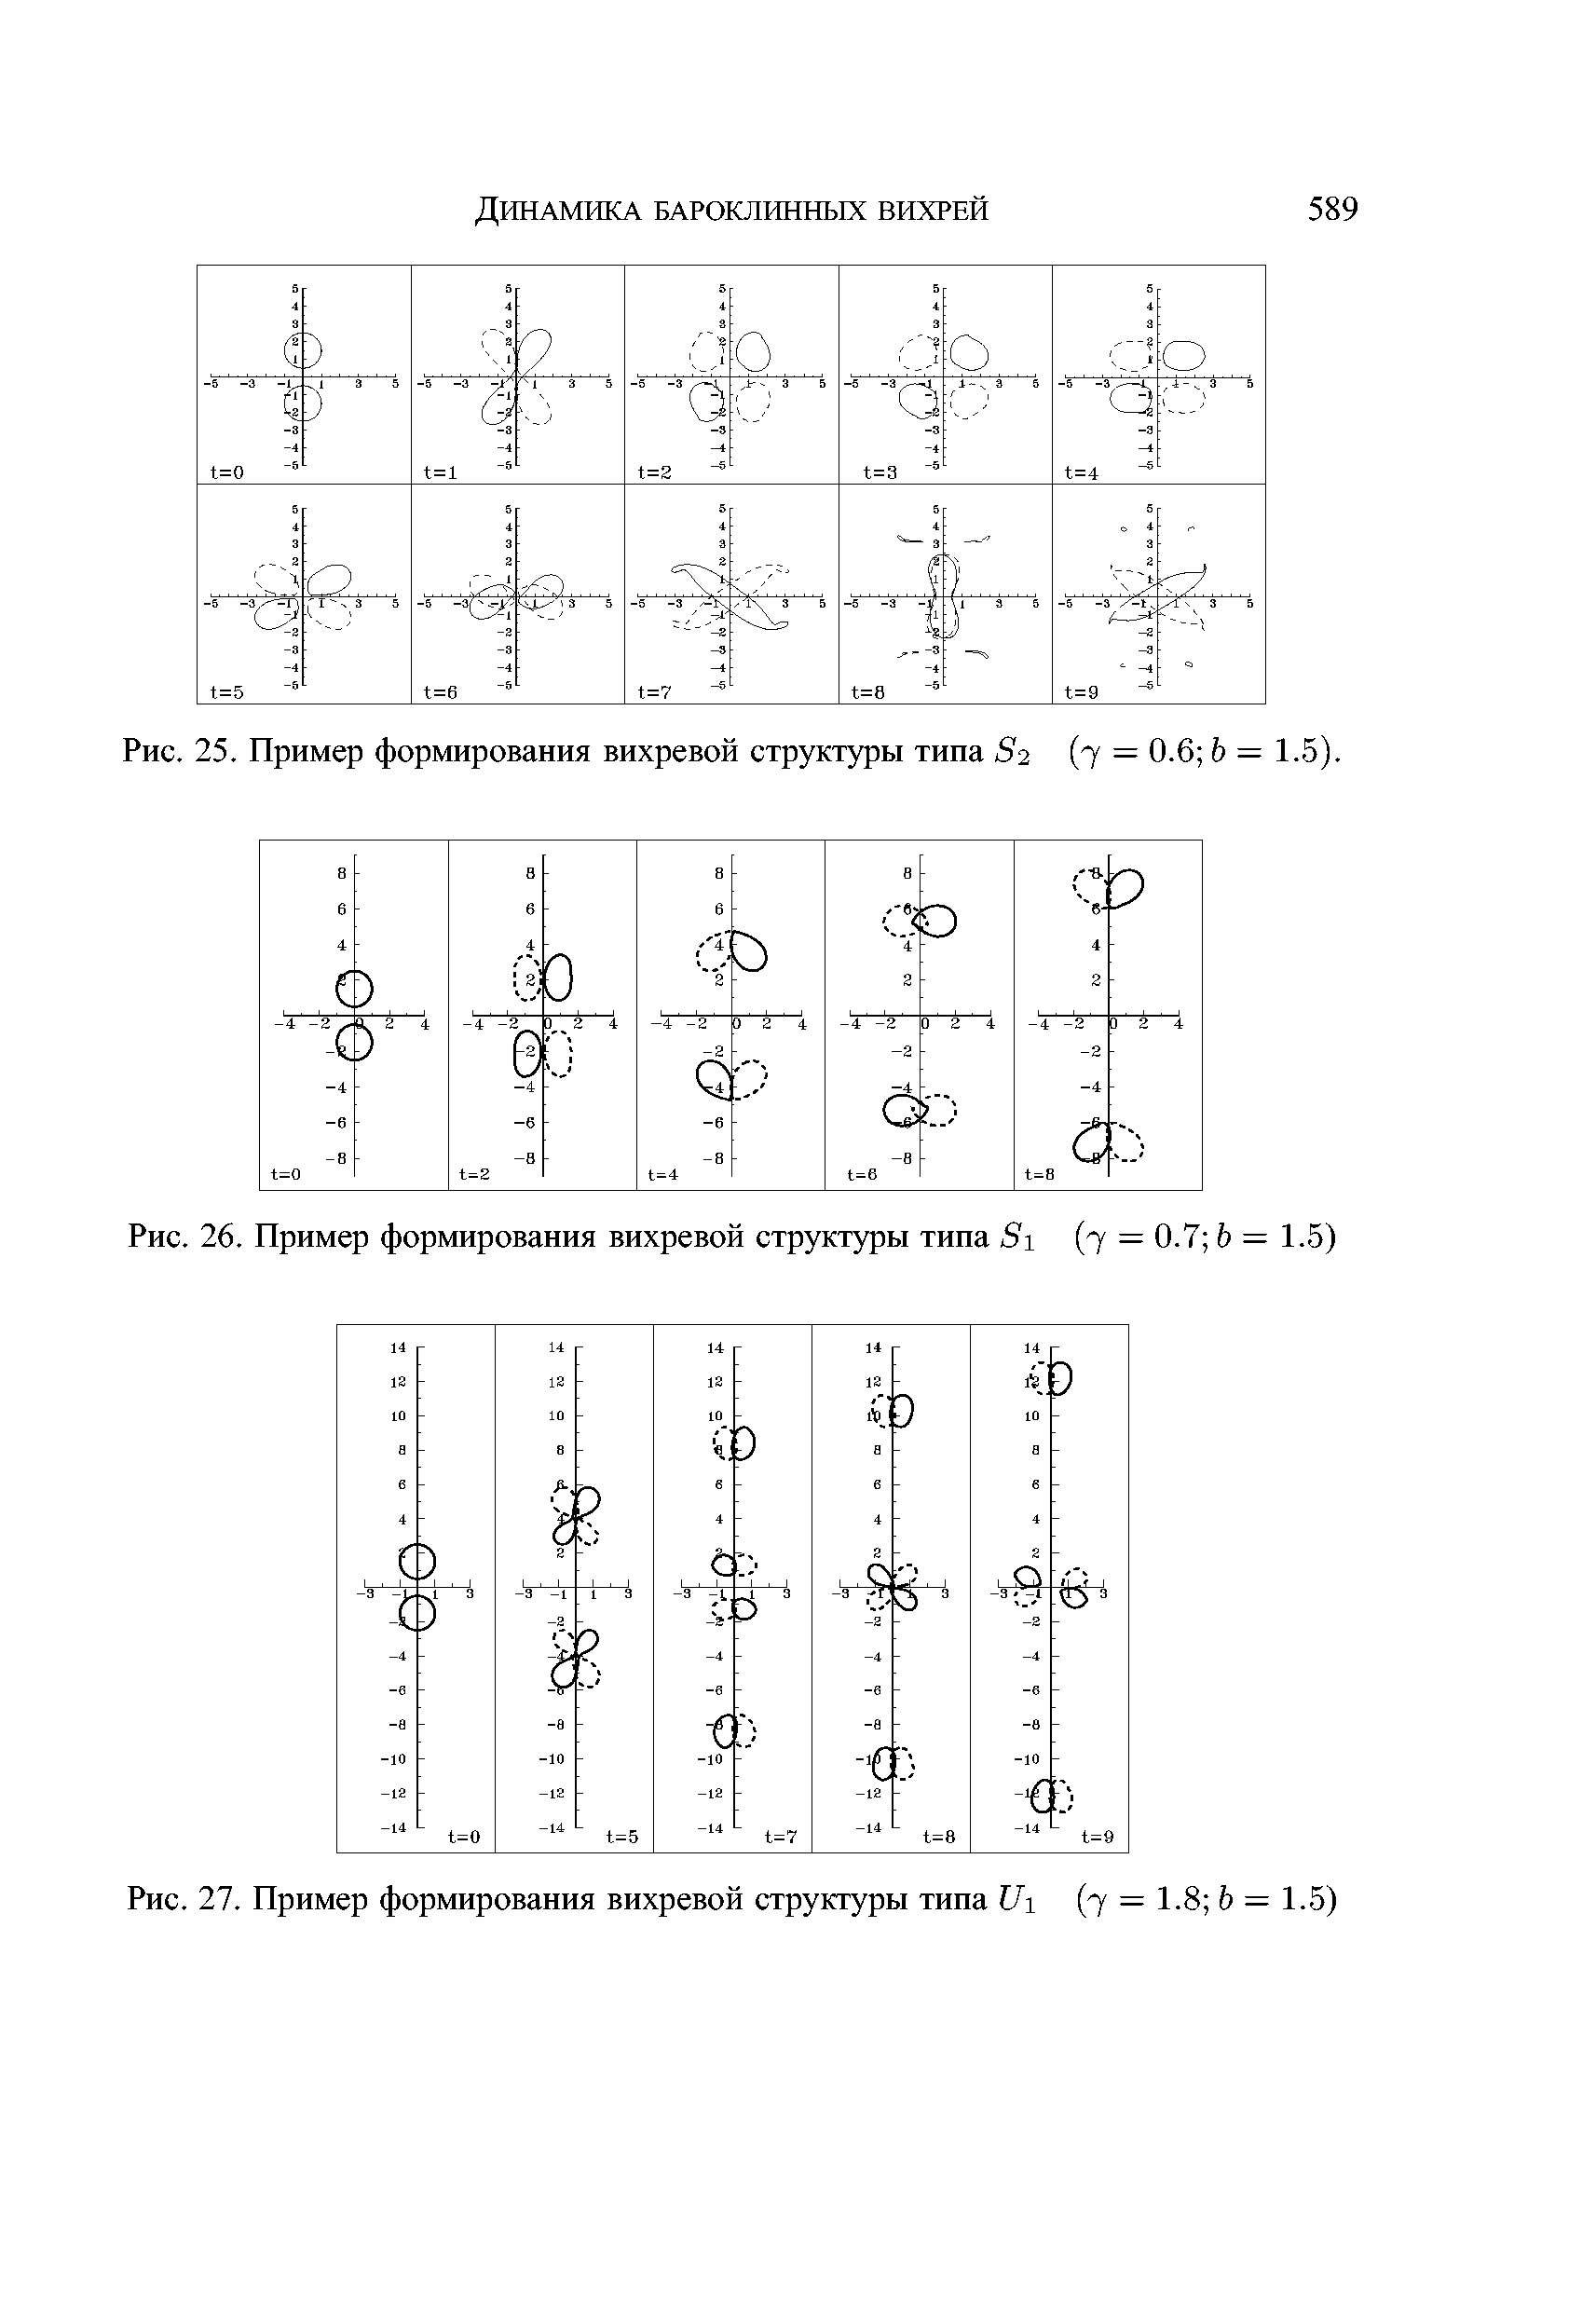 Рис. 27. Пример формирования вихревой структуры типа III (7 = 1.8 Ь = 1.5)
